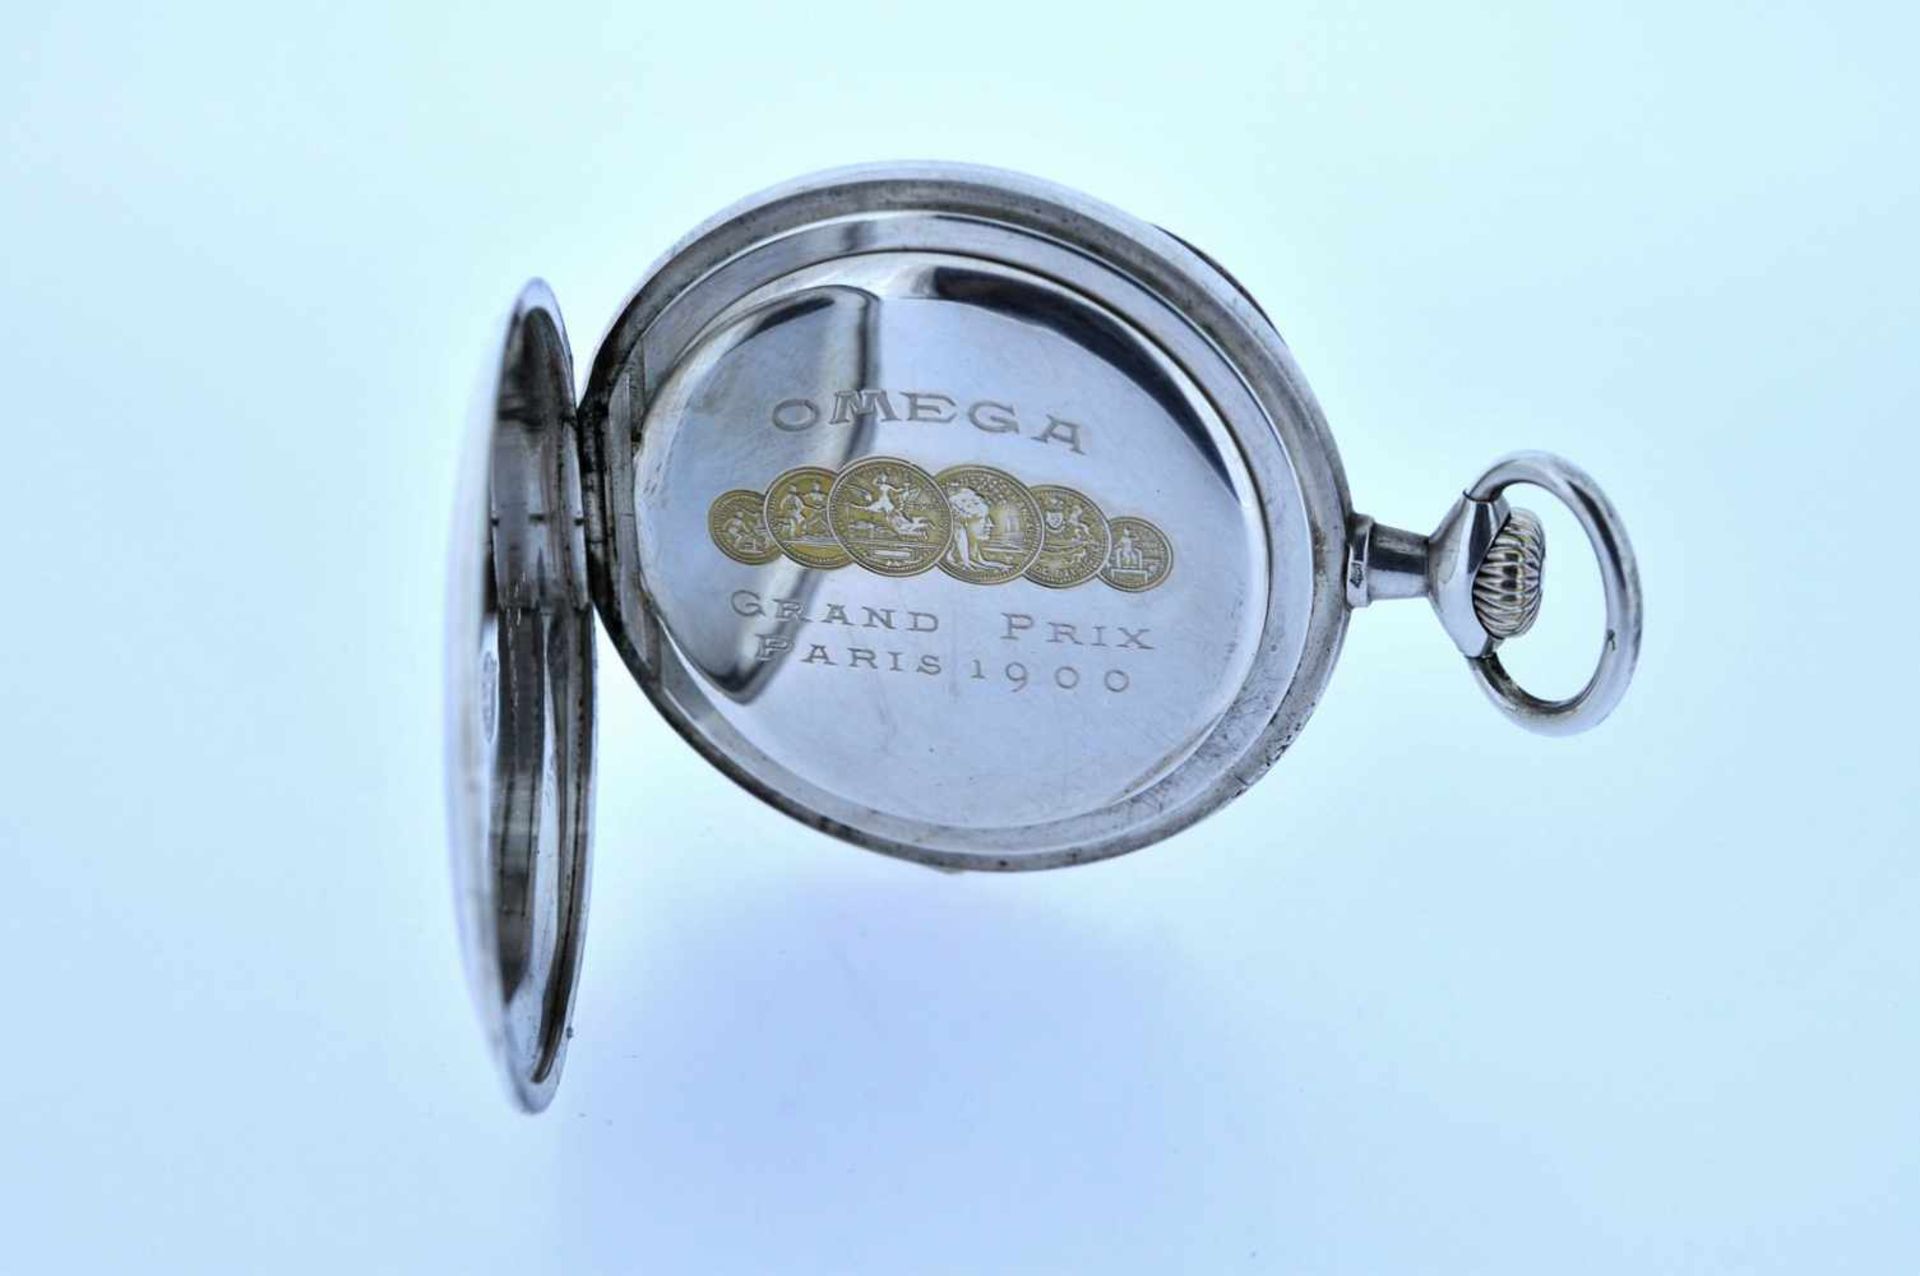 Silberne Taschenuhr Silberne Taschenuhr mit kleiner Sekunde, Omega, Breguetspirale, Ankerwerk, - Bild 4 aus 4